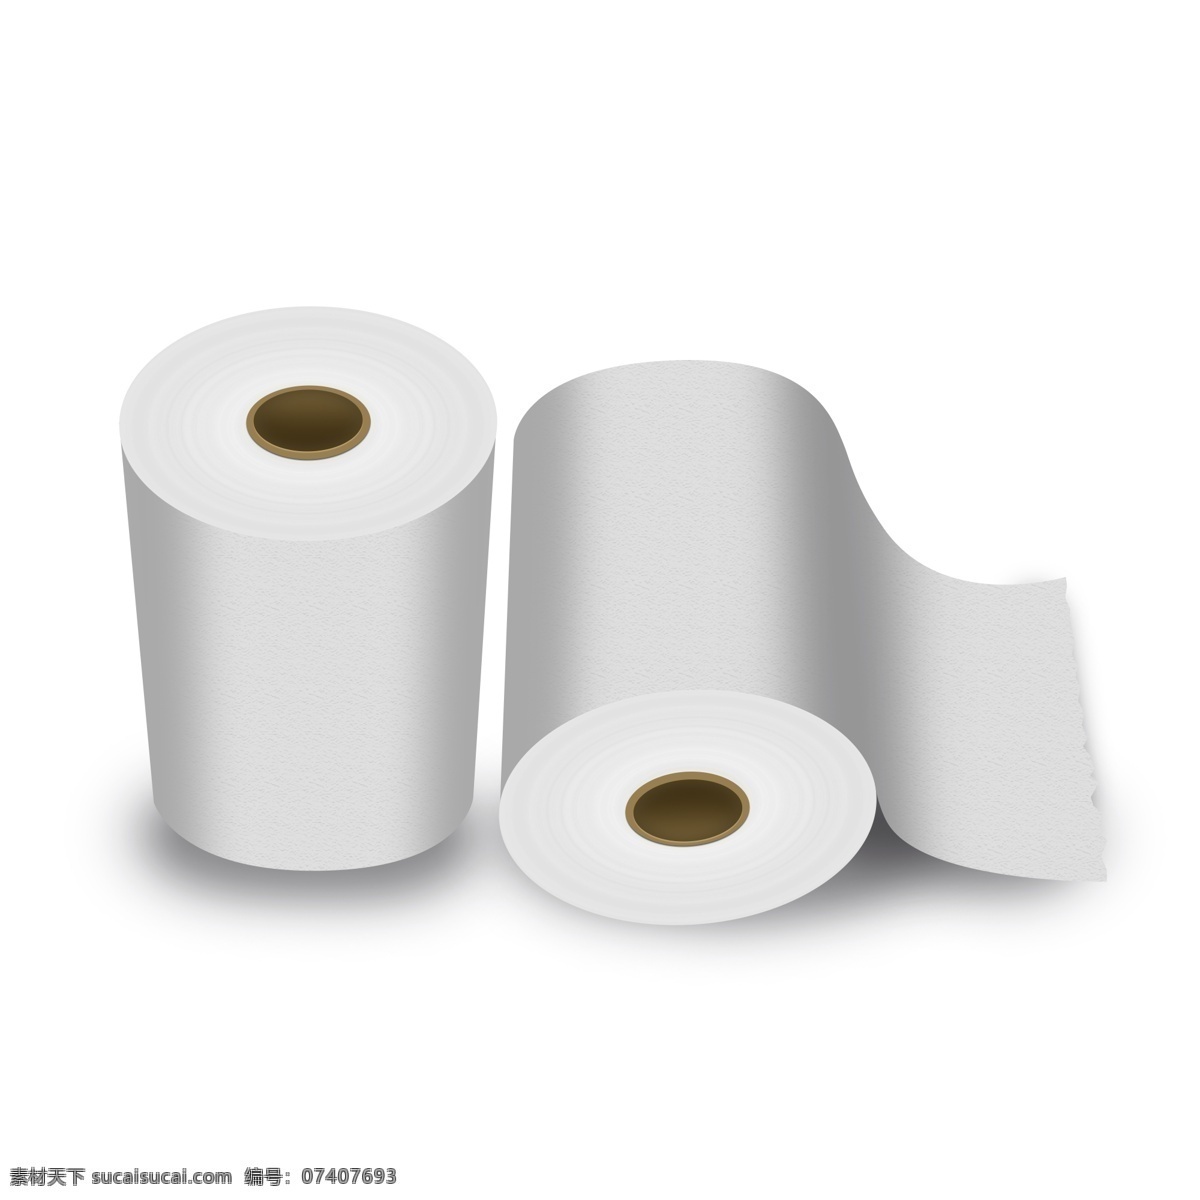 生活用品 厕所 卫生纸 效果 图案 商用 厕纸 卷子 纸巾 厕所纸